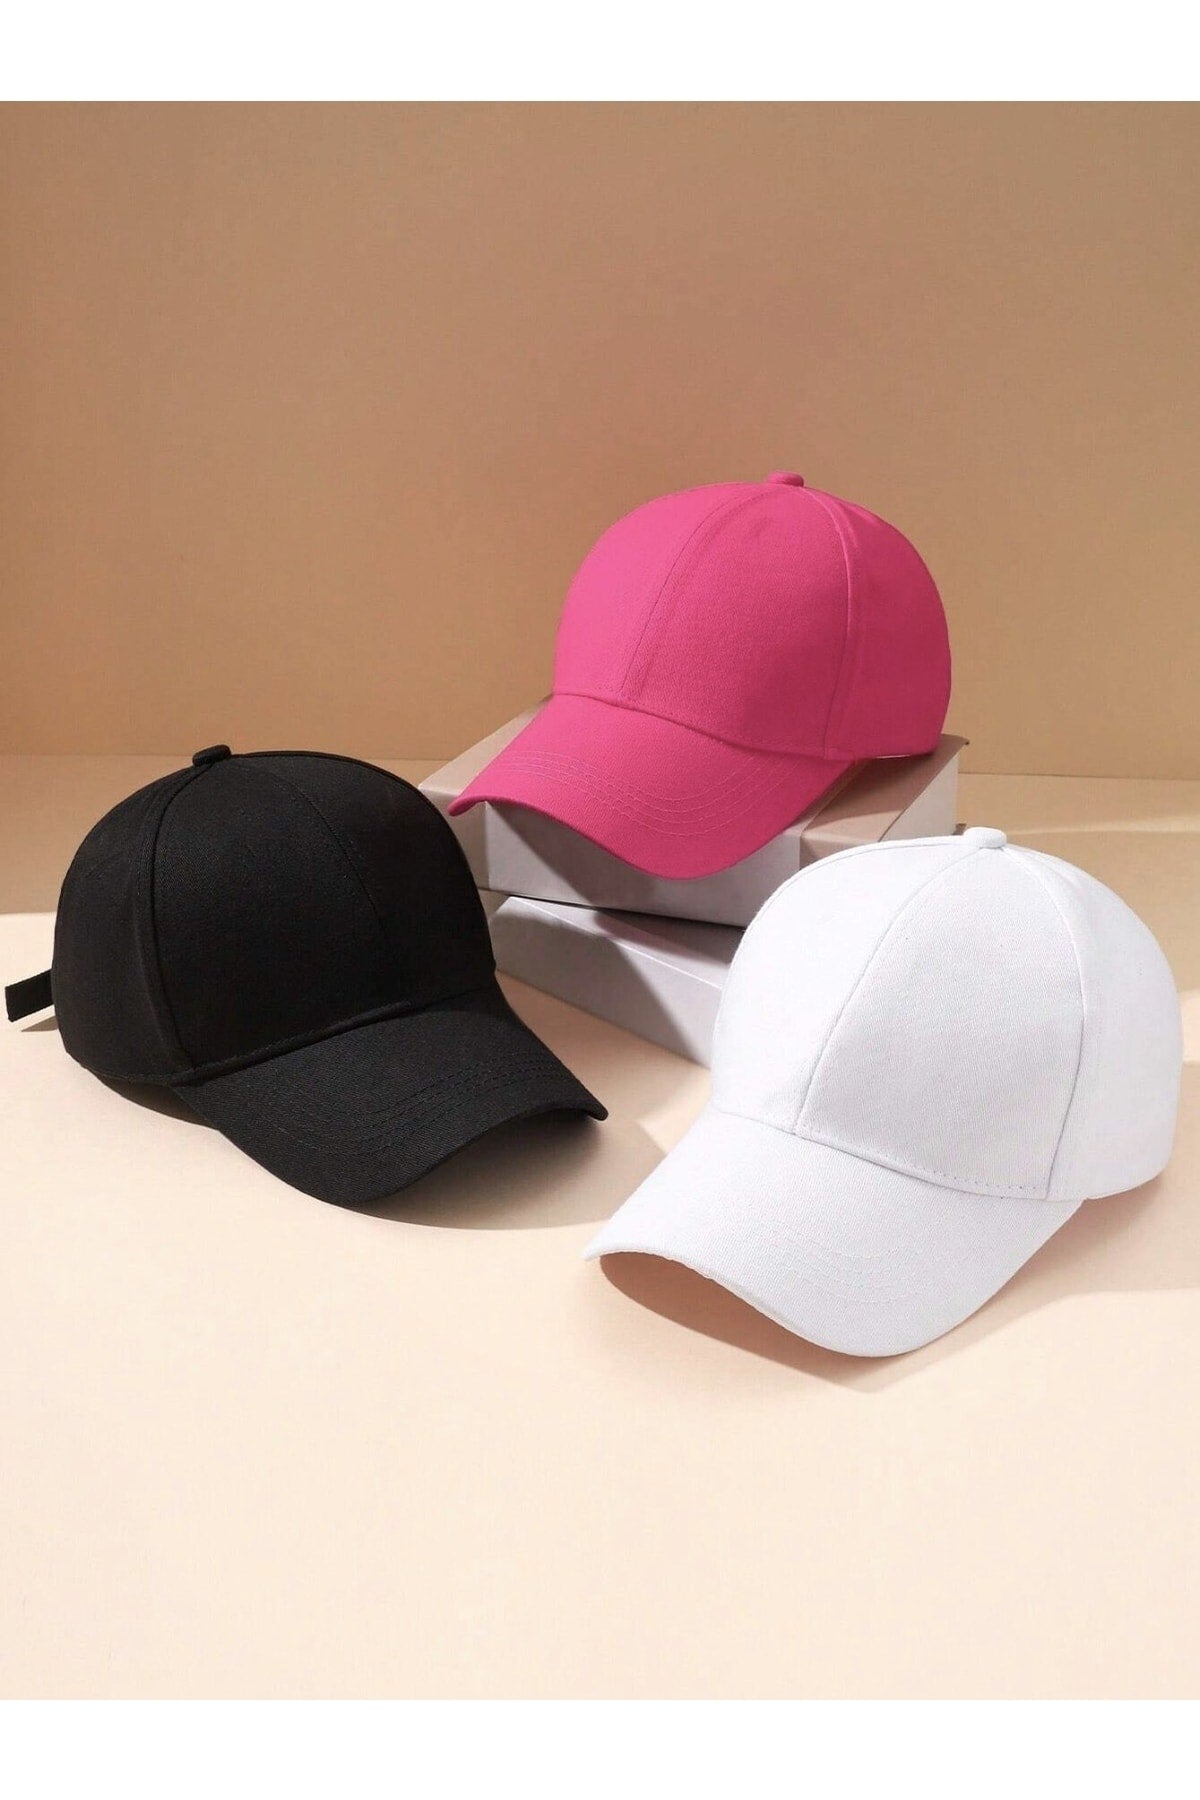 Sports Hat Unisex 3 Pieces